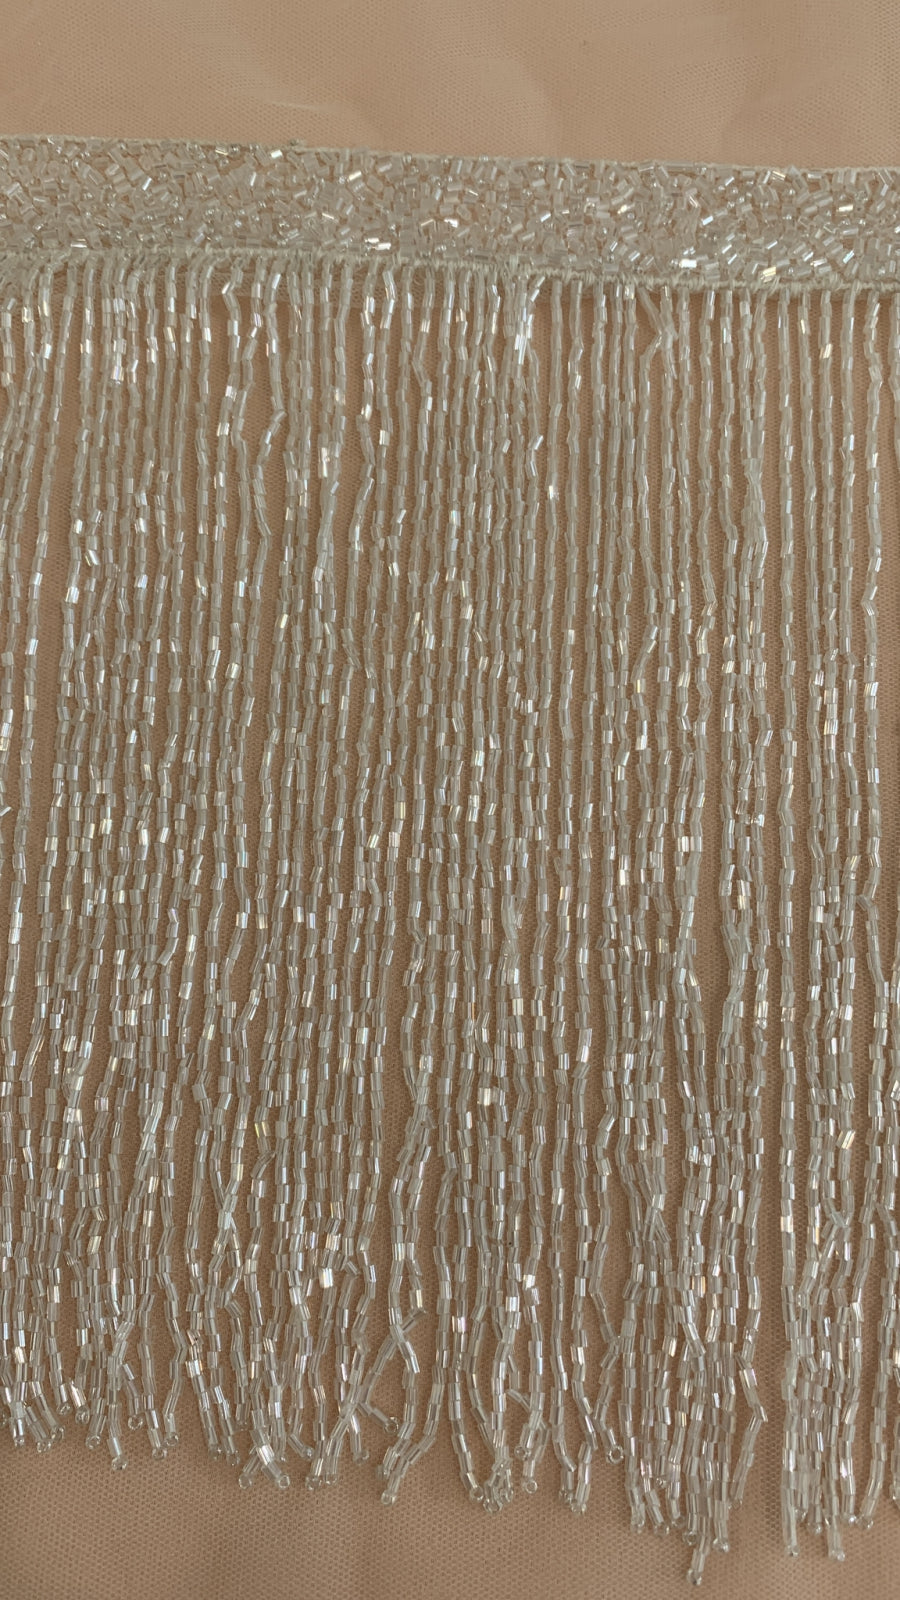 Franjuri Ivory din Margele de Sticla - 20 cm lungime